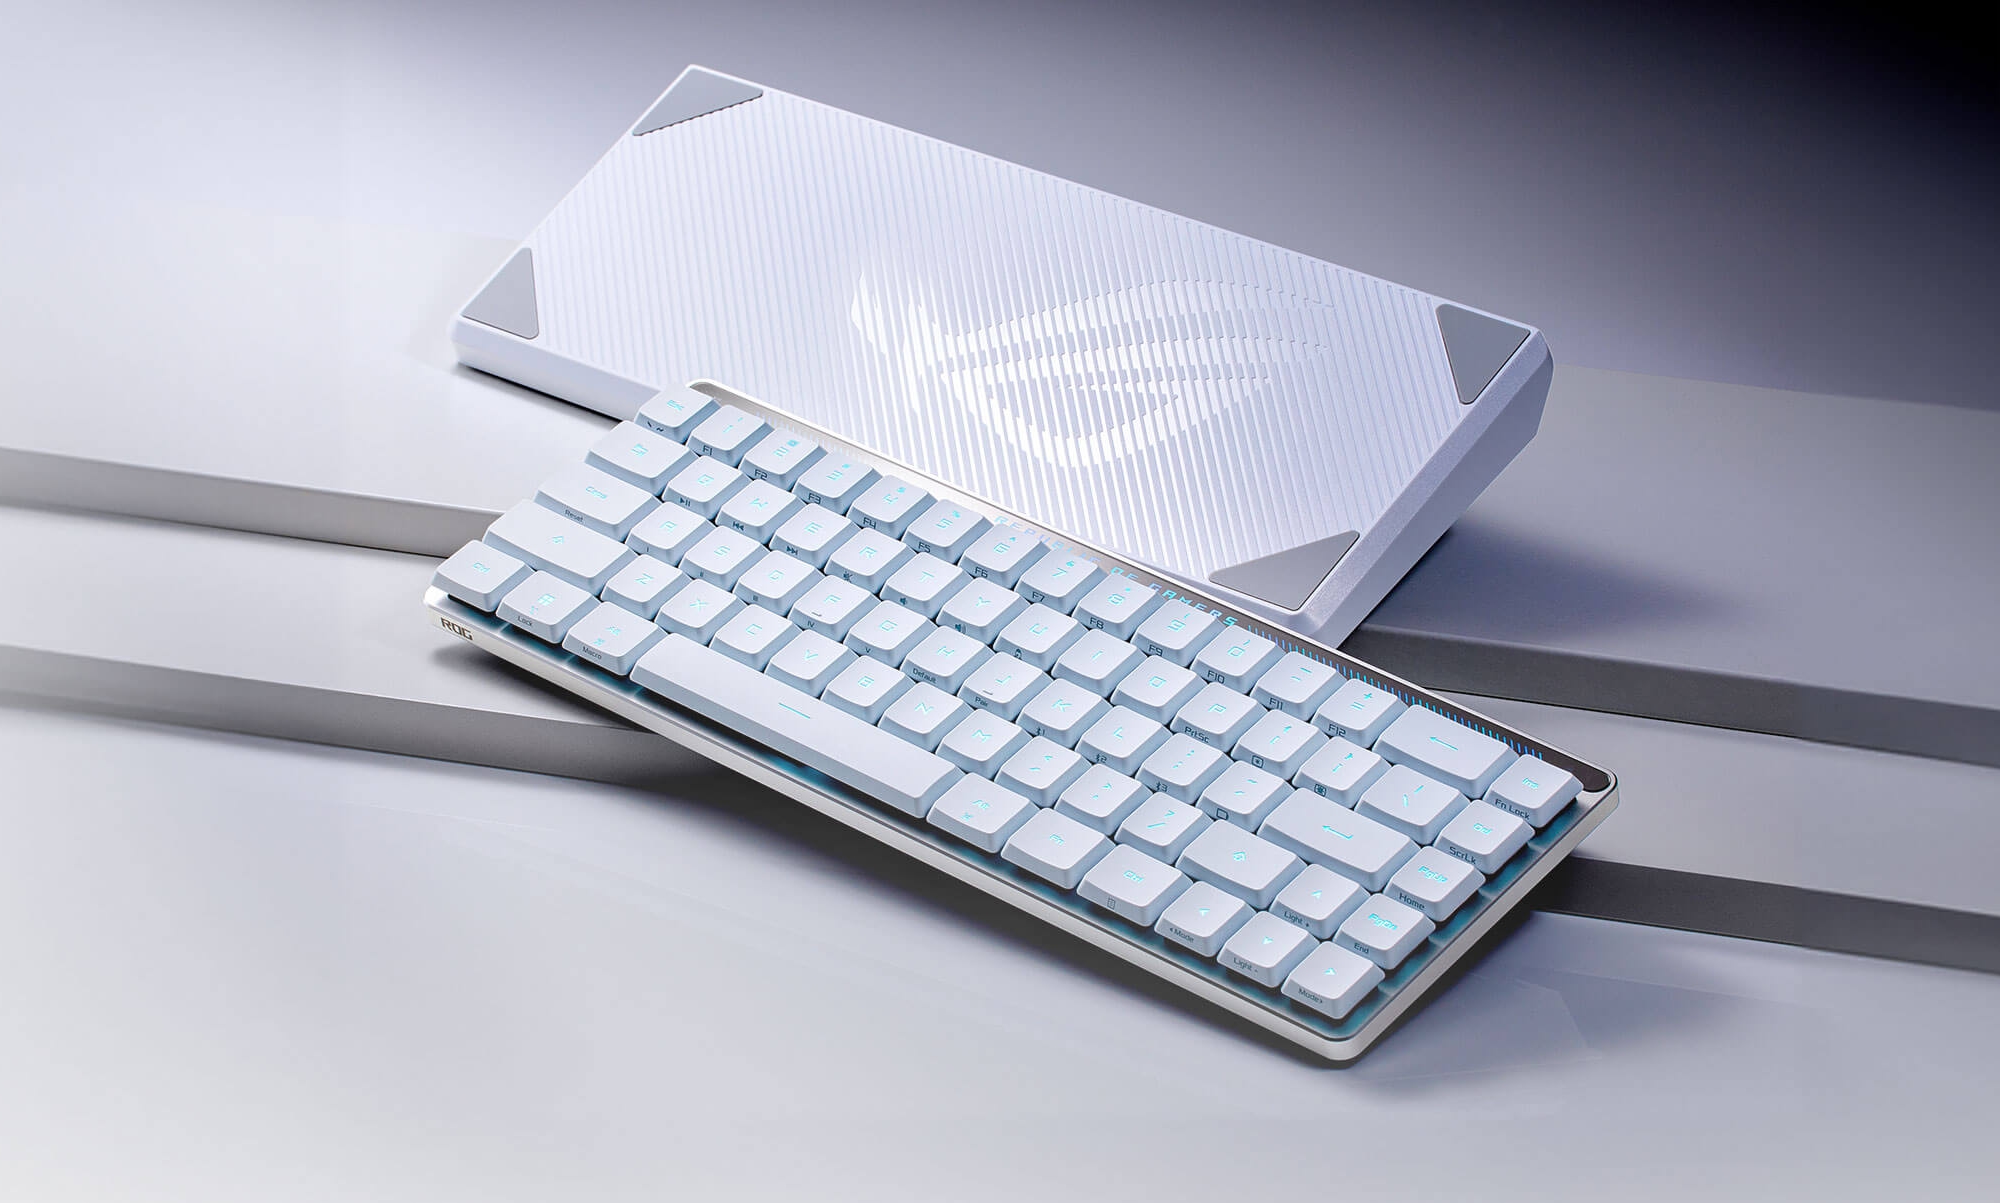 ASUS ROG Falchion RX Gaming Keyboard debuteert op de wereldmarkt